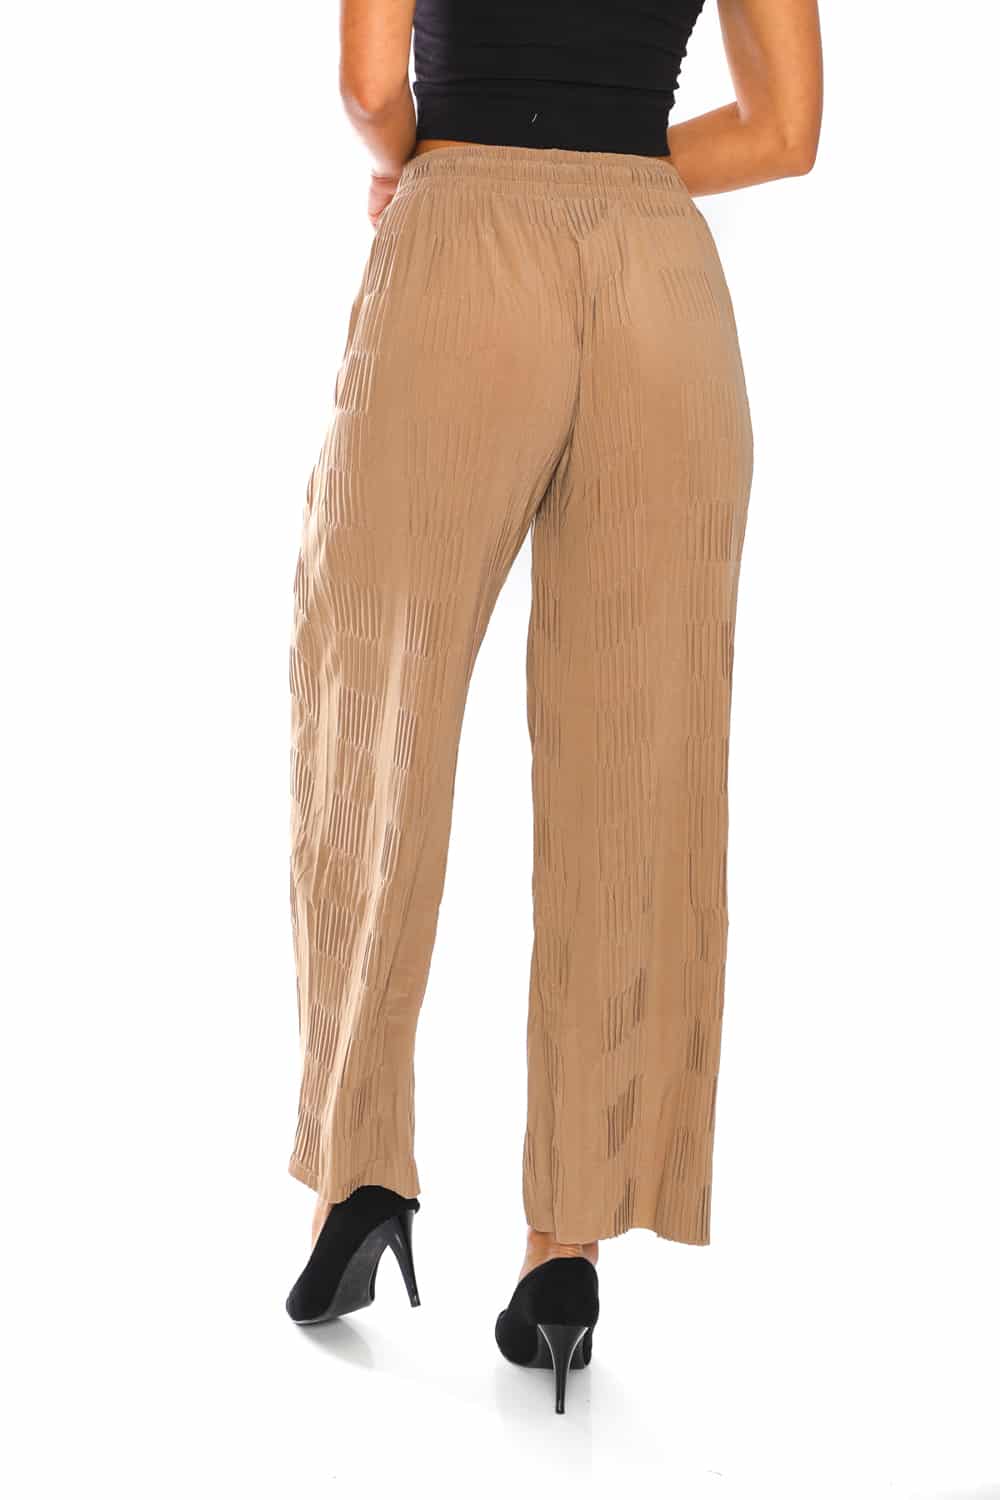 Women's Pleats Flowy Wide Pants - 19